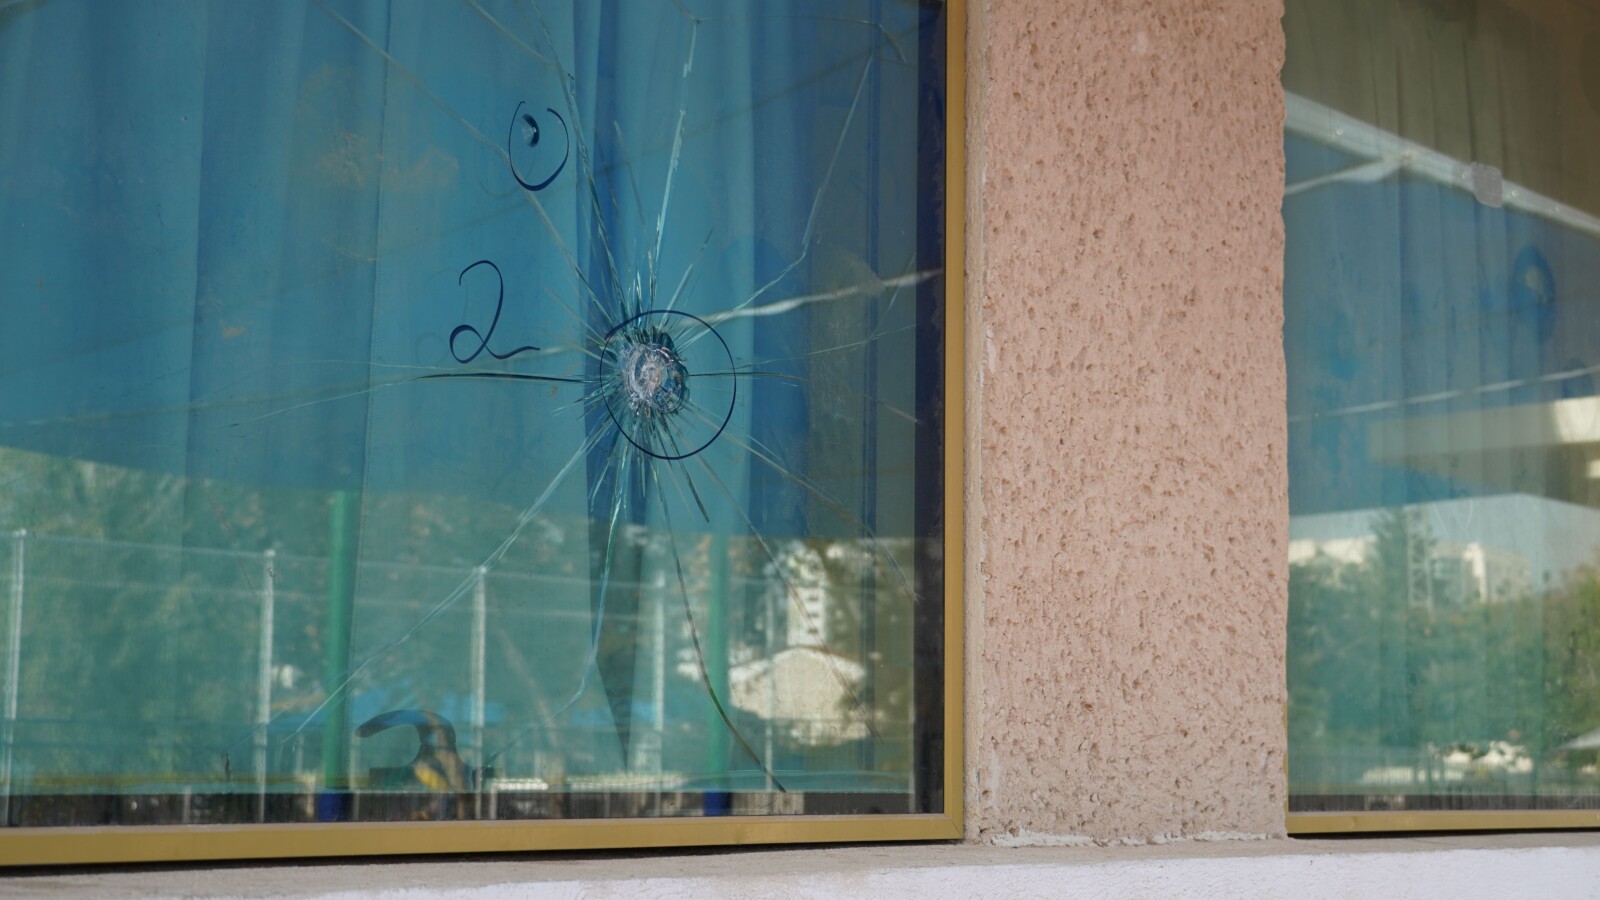 פגיעת כדור בחלון בית הספר היסודי 'מעוז שקמים' בשדרות (צילום: סוניה גרשפט)